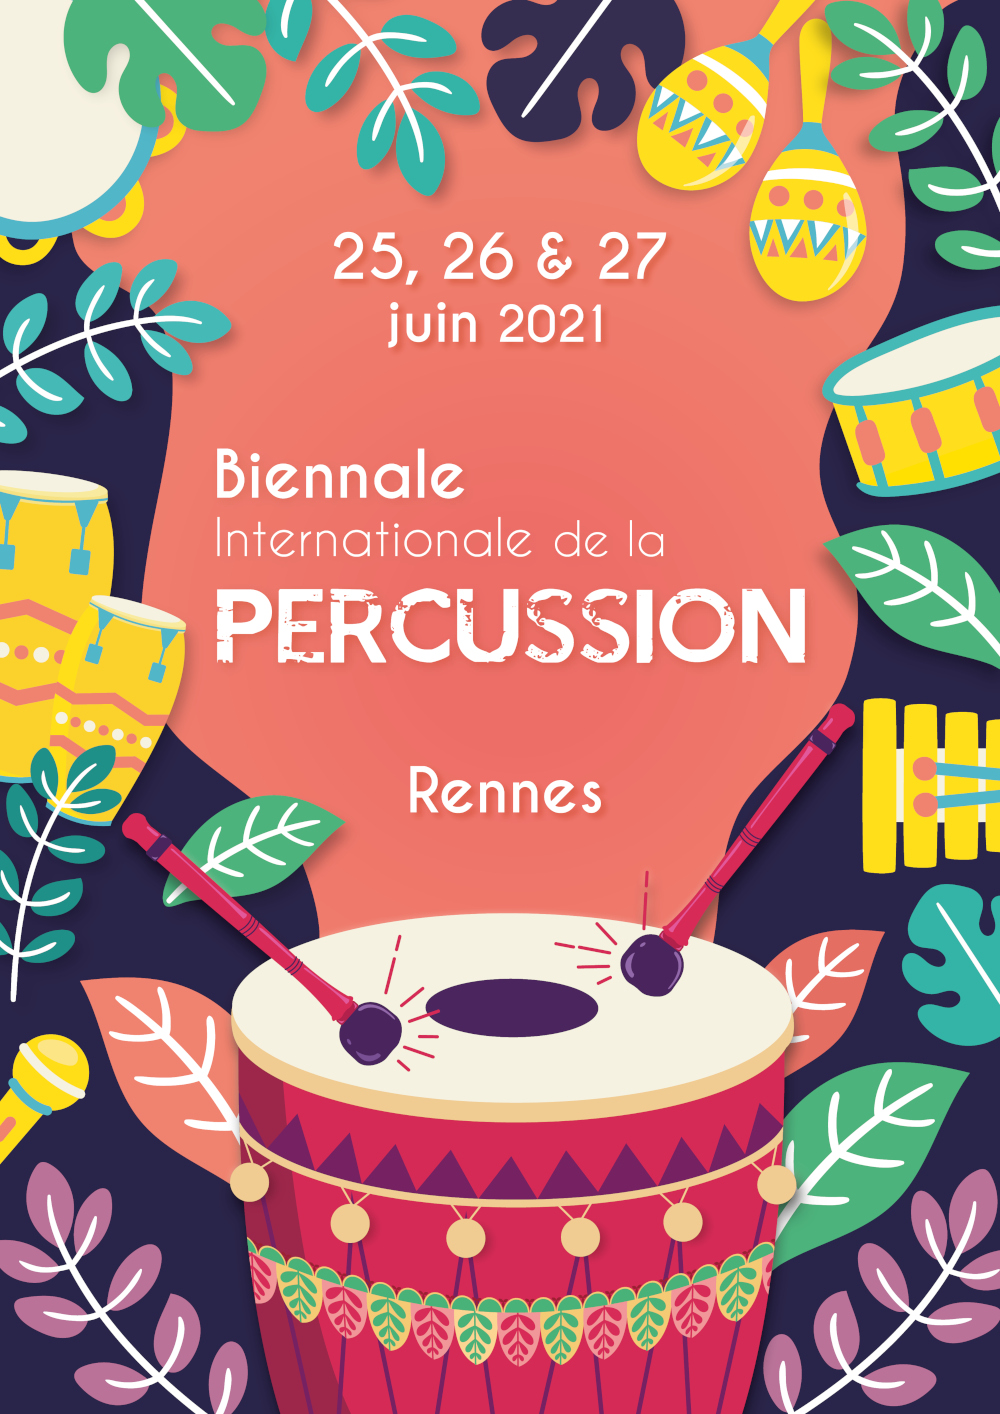 HandPan - Biennale Internationale de la Percussion